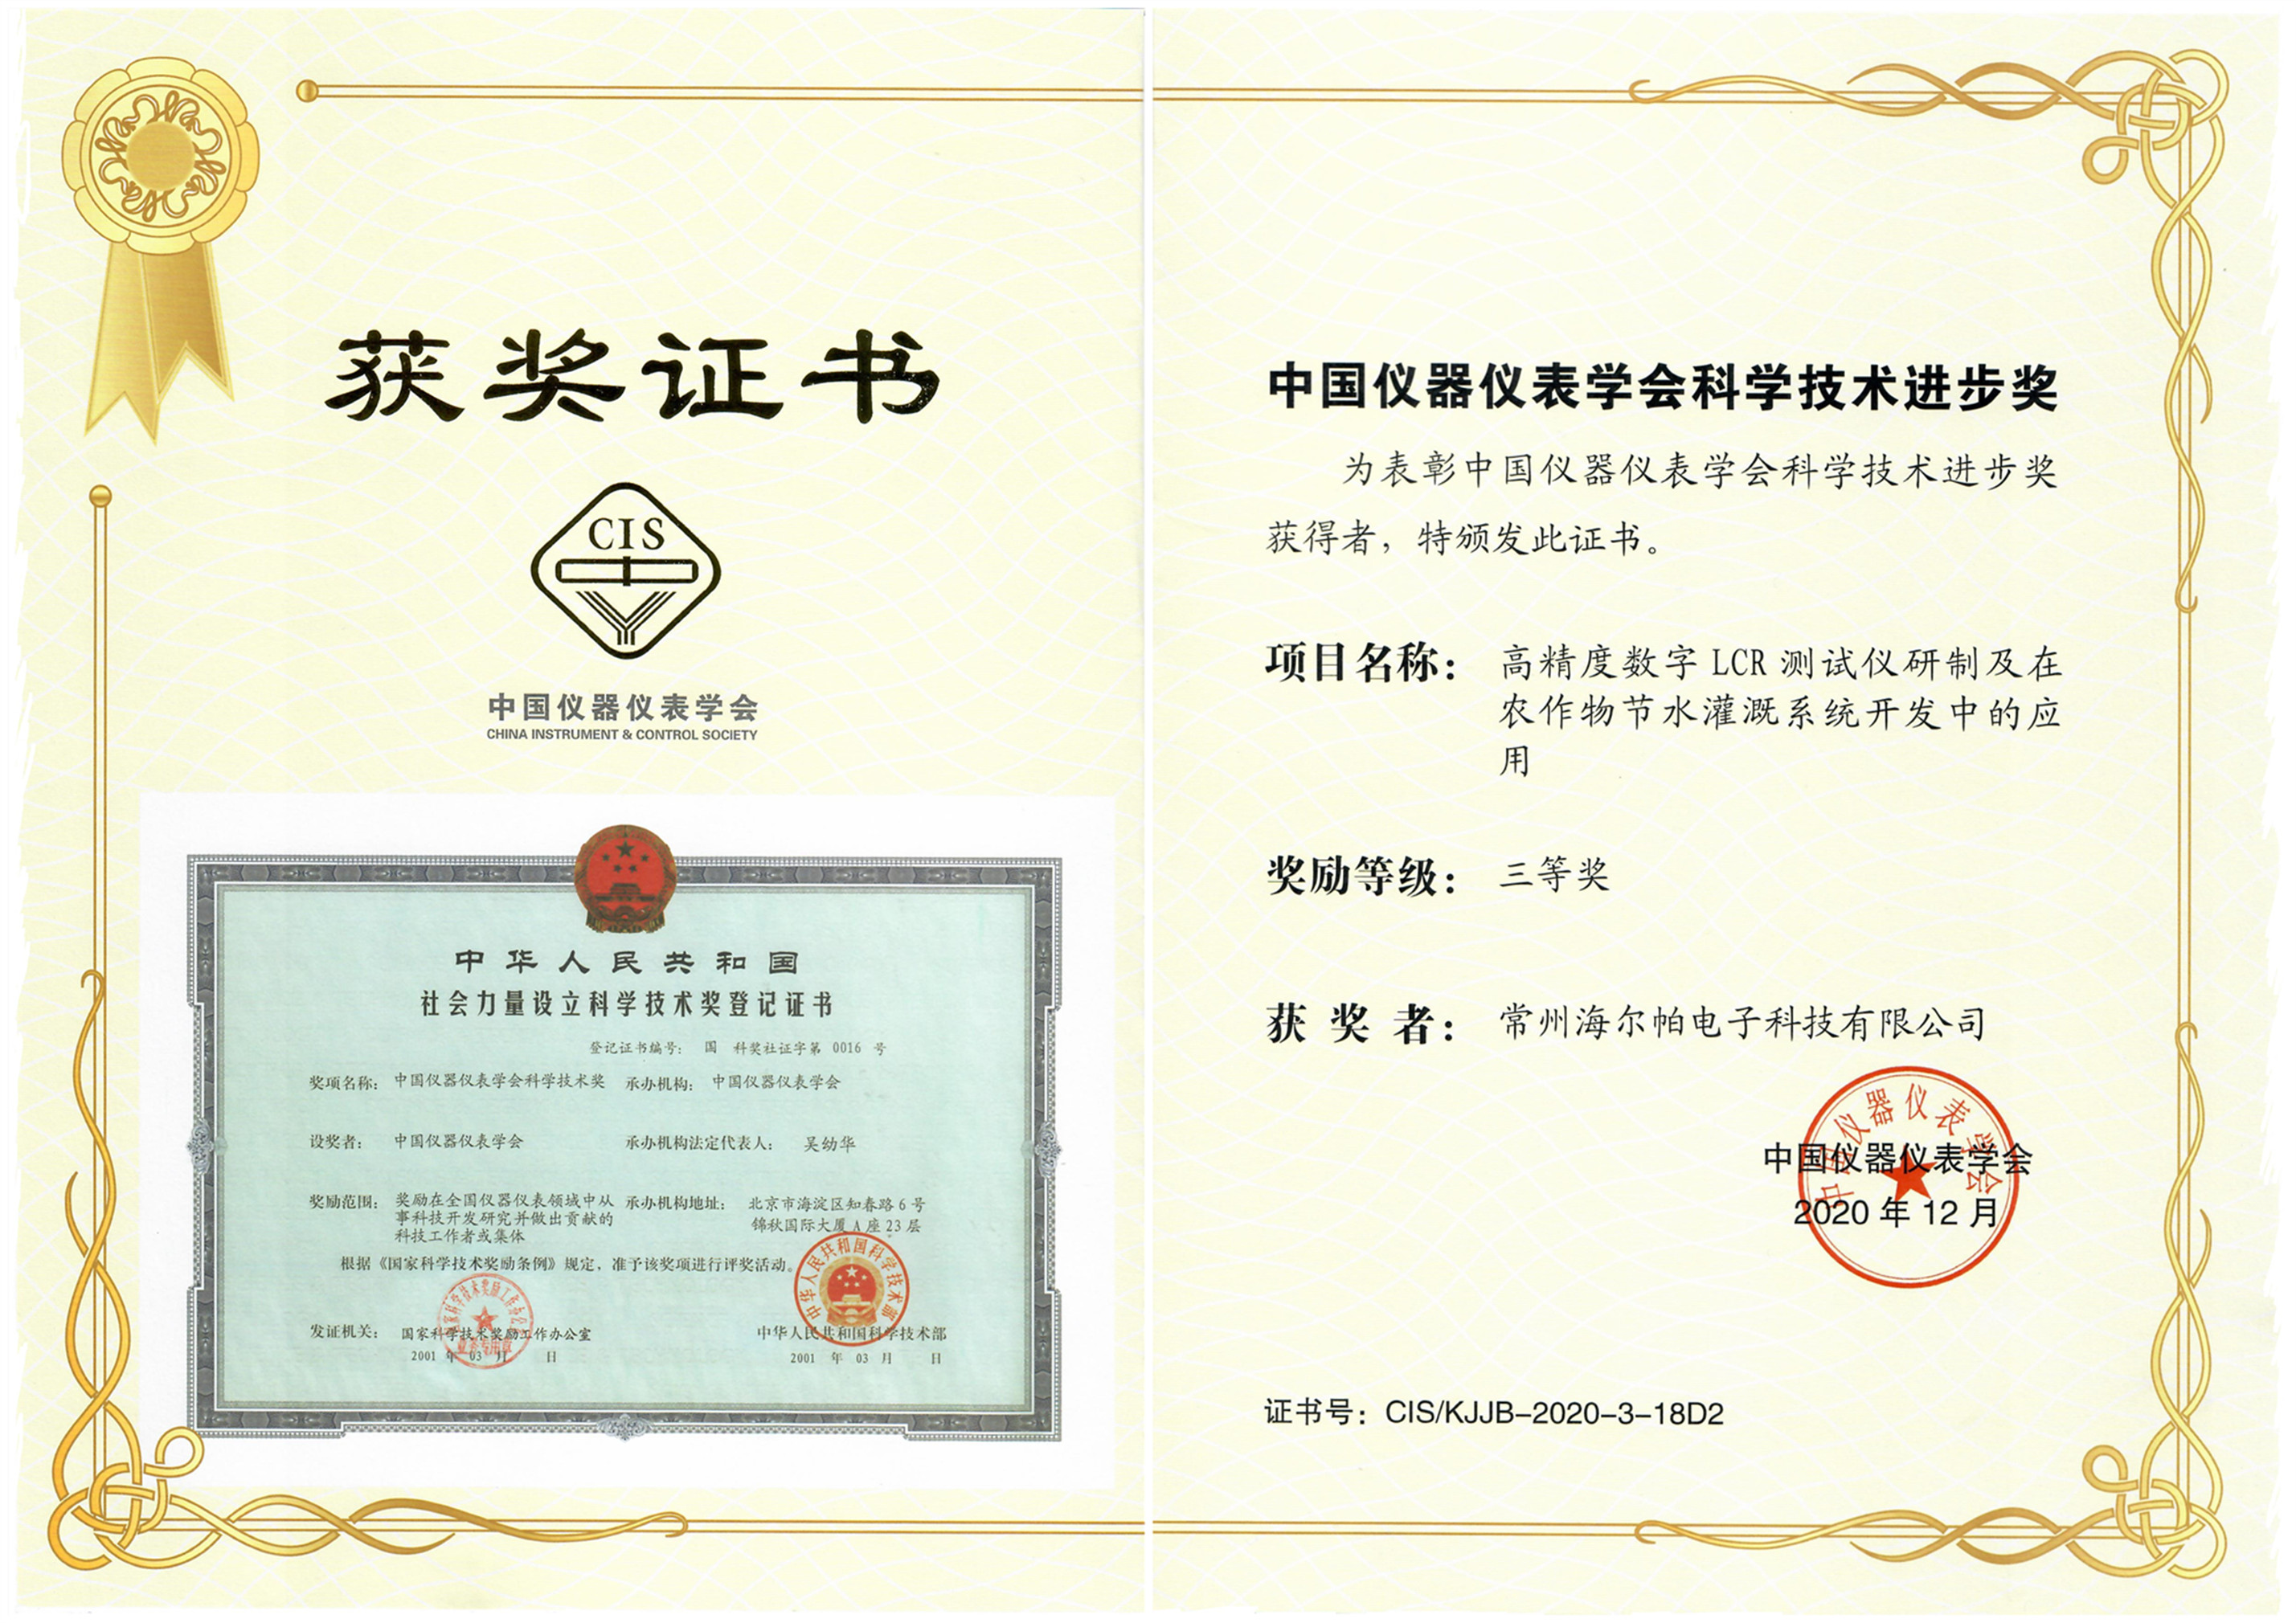 荣获2020年度中国仪器仪表学会科学技术奖